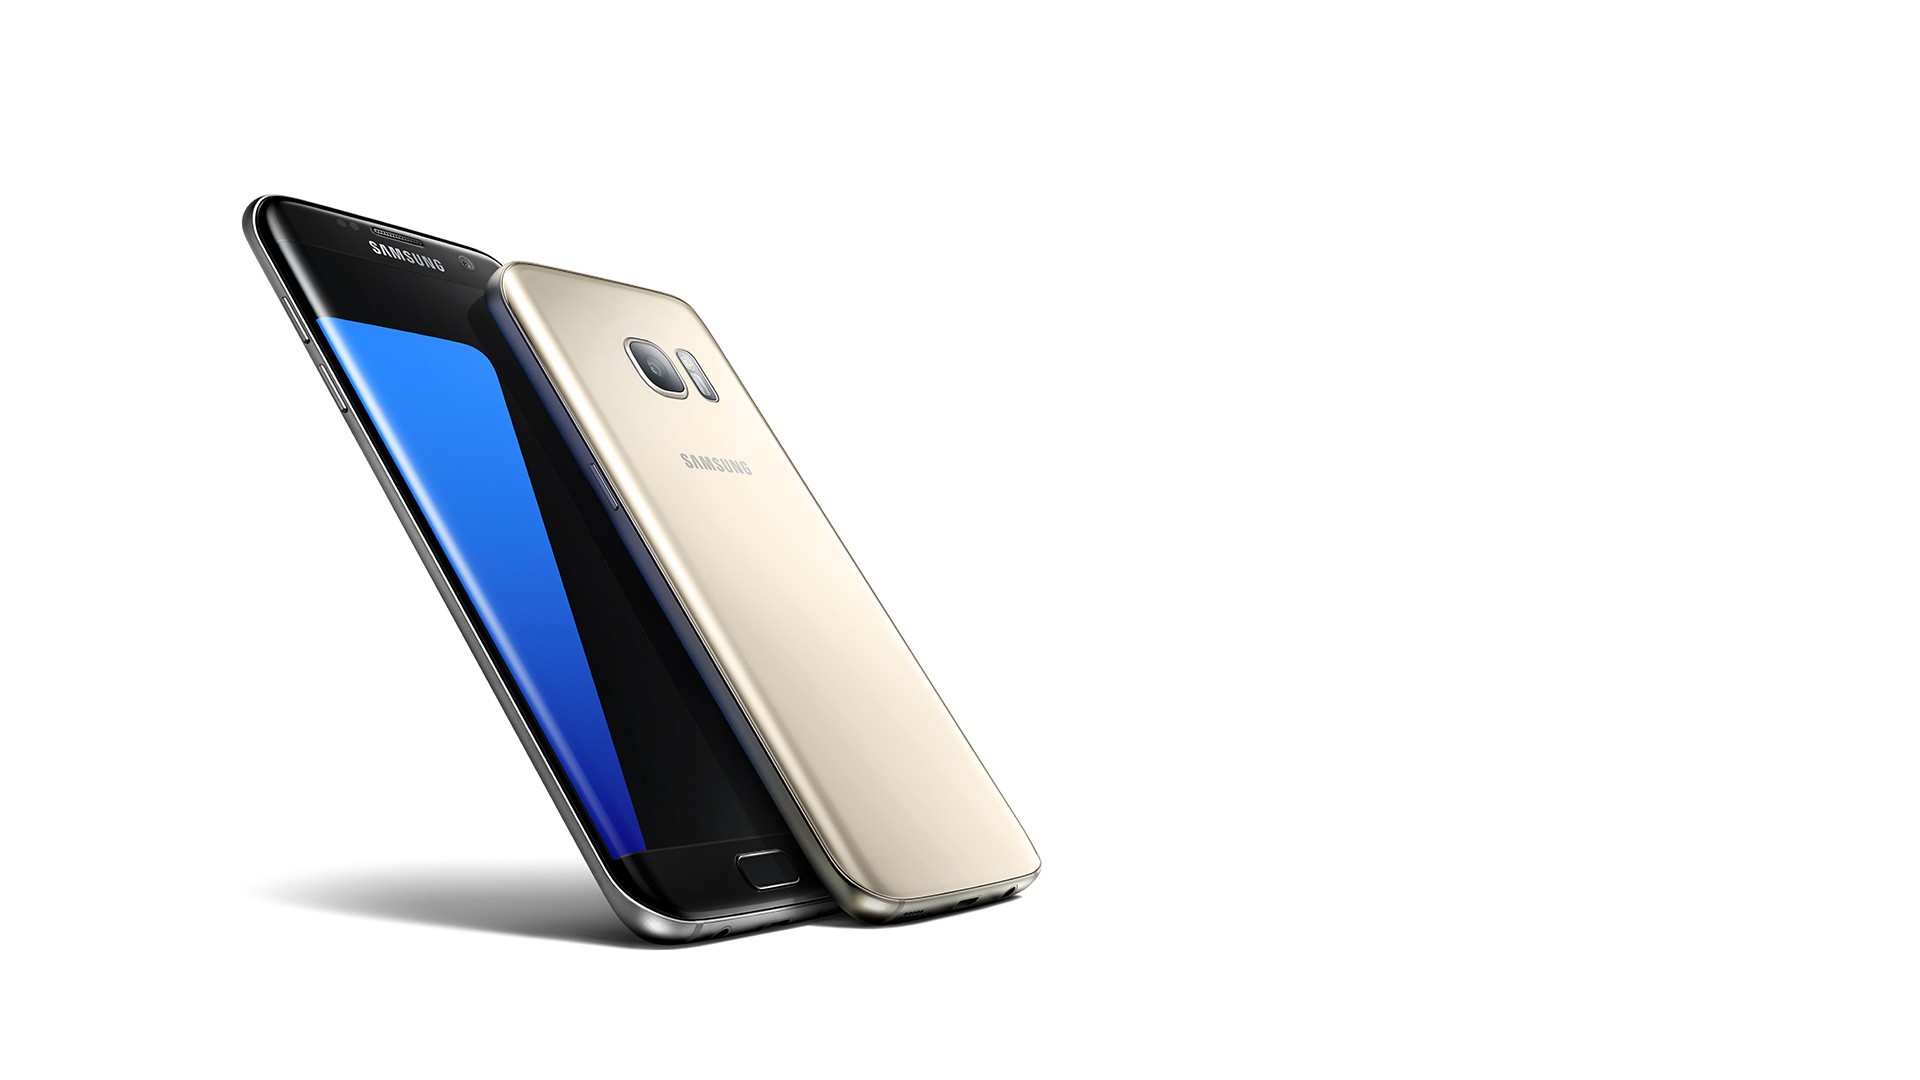 ลาก่อนจอเรียบ!! ลือชุดใหม่ Galaxy S8 เปิดตัวสองขนาด 5.1 นิ้วและ 5.5 นิ้ว ใช้หน้าจอขอบโค้งทั้งคู่!!